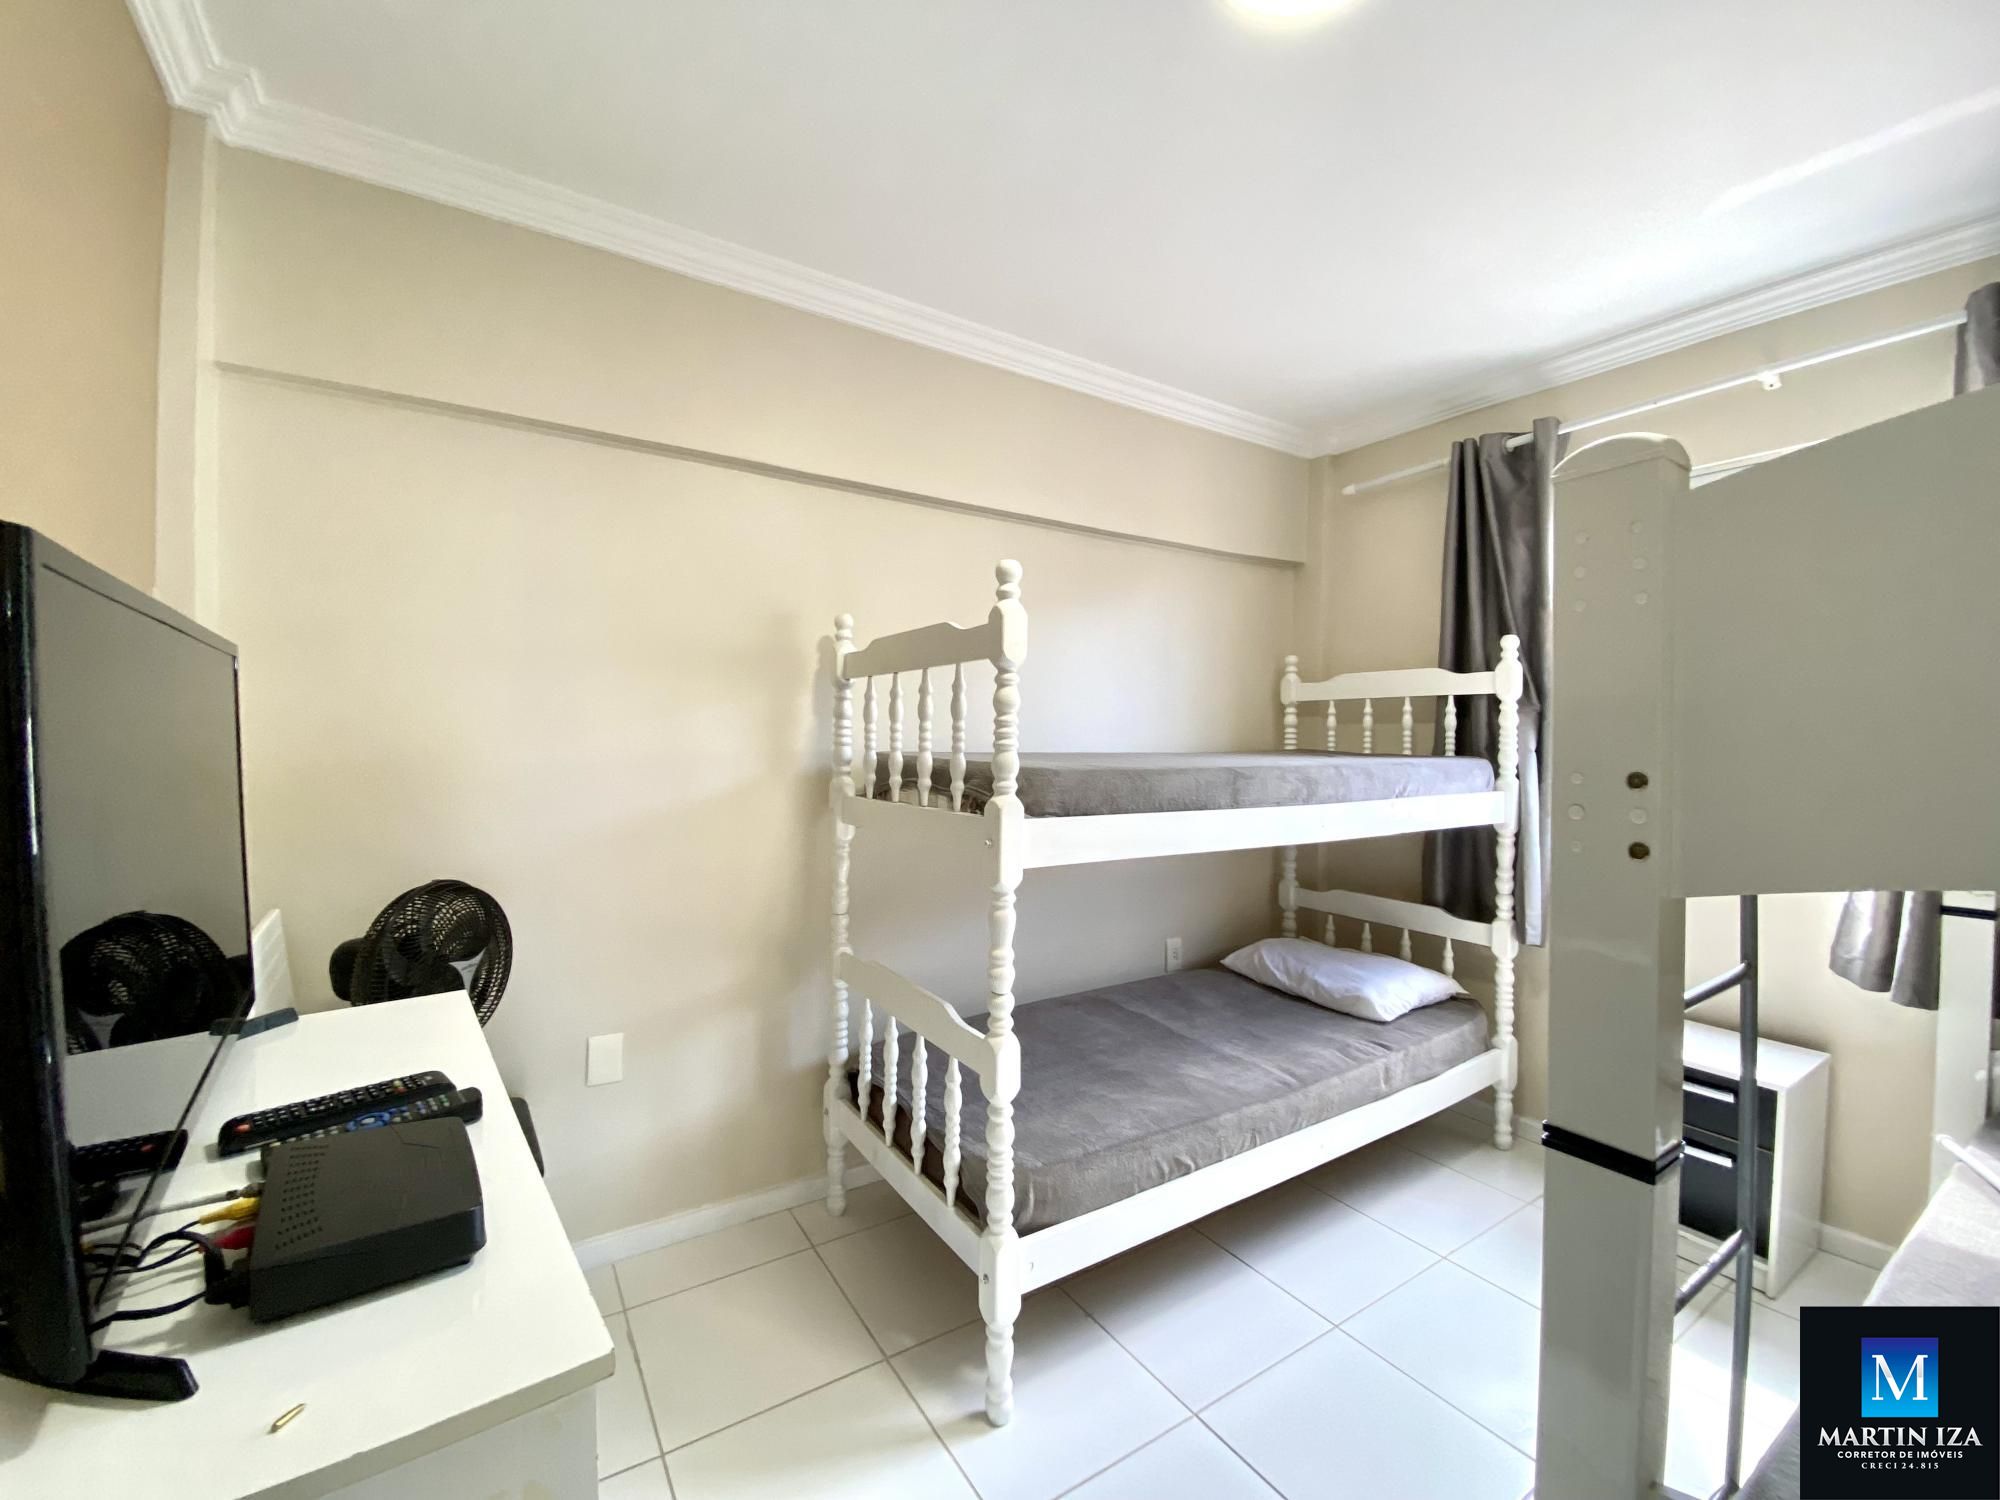 Apartamento com 3 Dormitórios para alugar, 110 m² valor à combinar